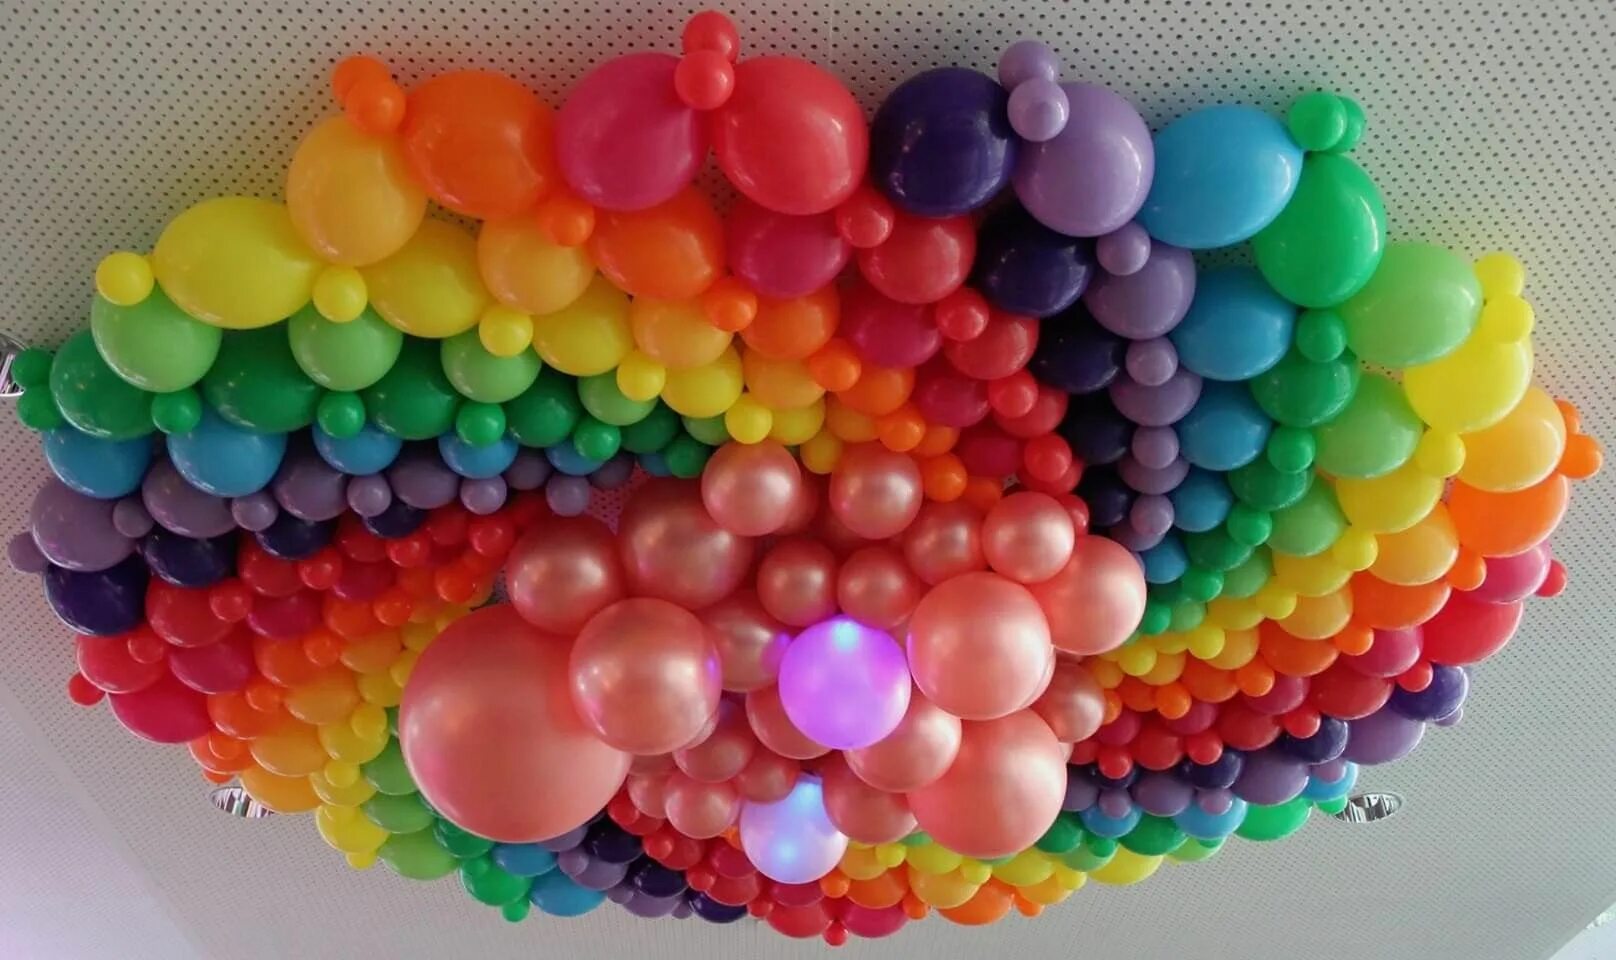 Республика шаров. Украшение разноцветными шарами. Радуга из воздушных шаров. Разноцветные шарики воздушные. Шары цвета радуги.